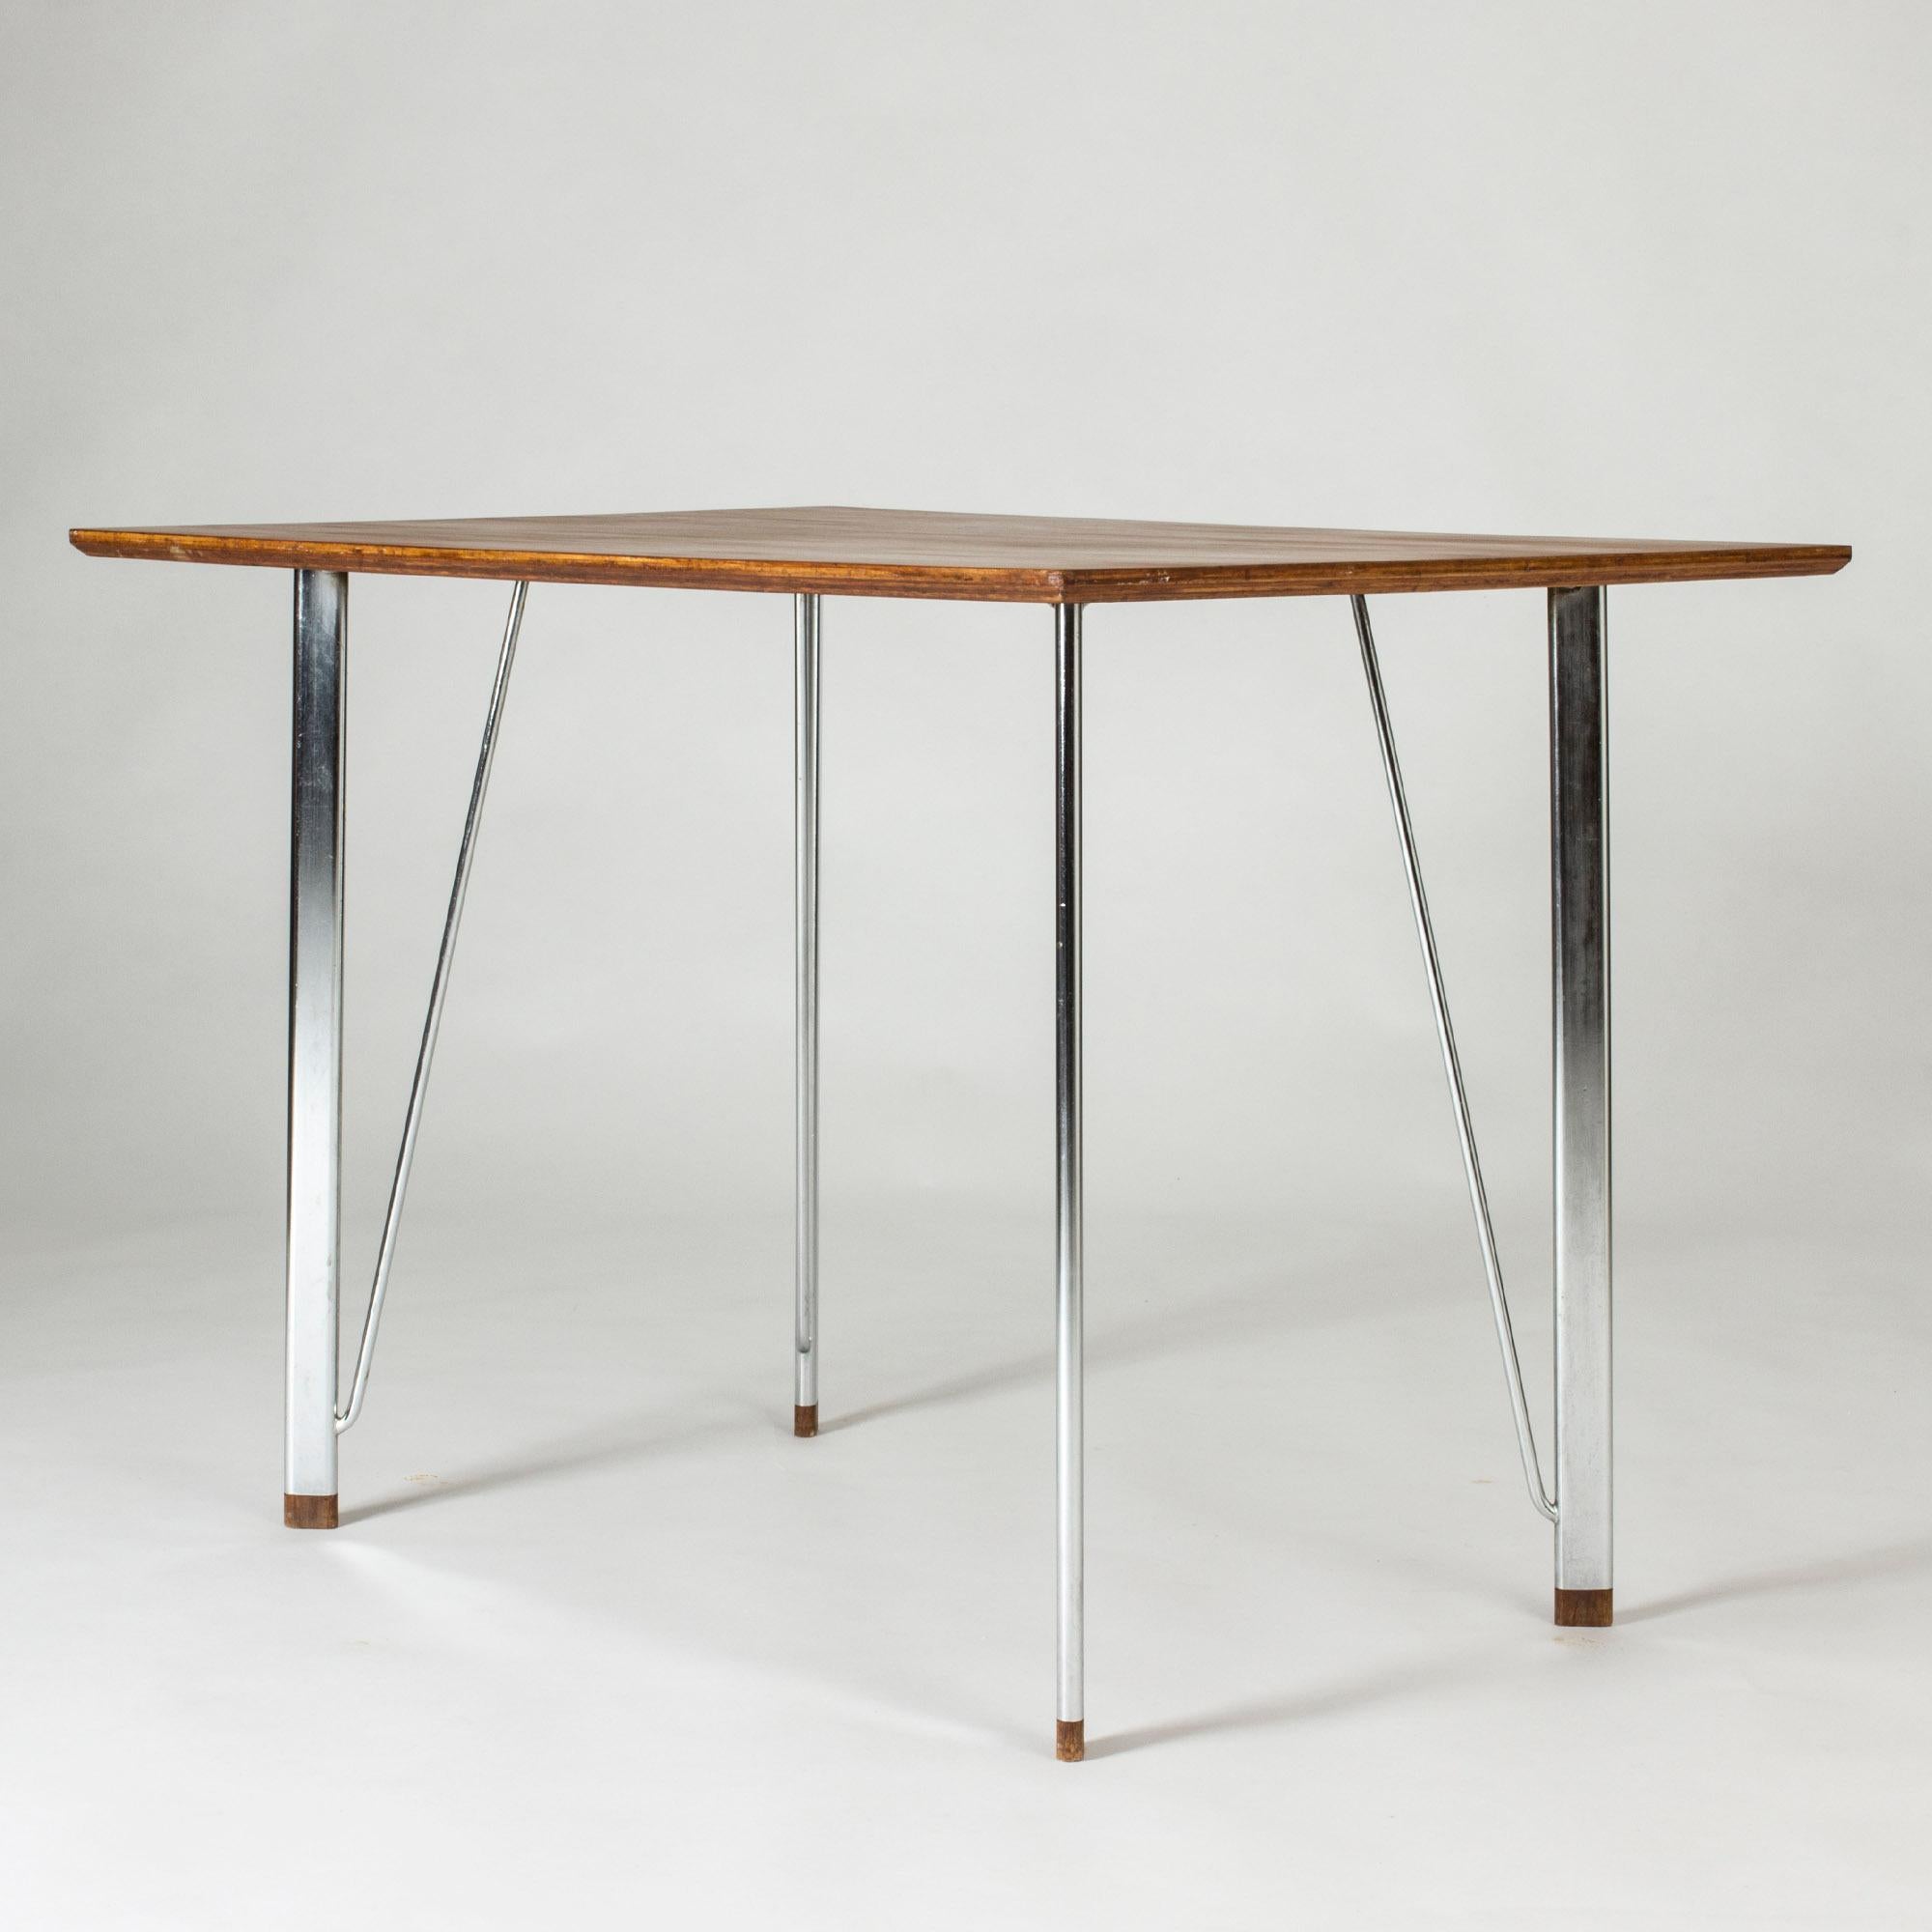 Mid-20th Century Steel and Teak Desk by Arne Jacobsen for Fritz Hansen. Denmark, 1960s For Sale